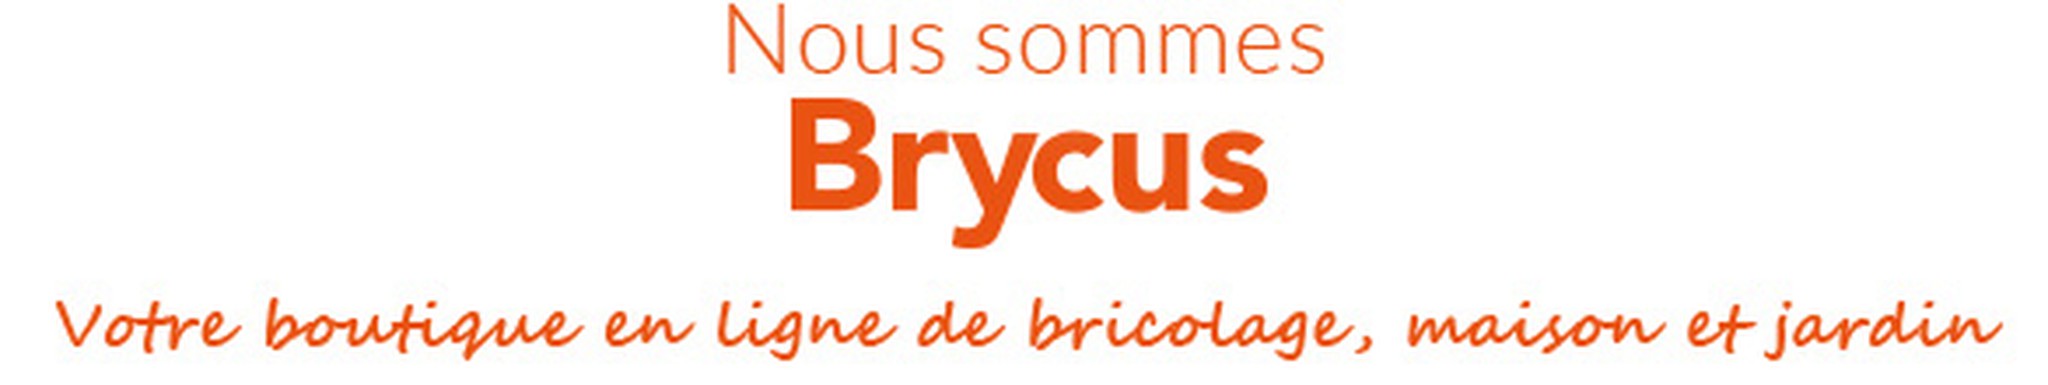 Nous sommes Bryus, votre magasin en ligne DIY, maison et jardin